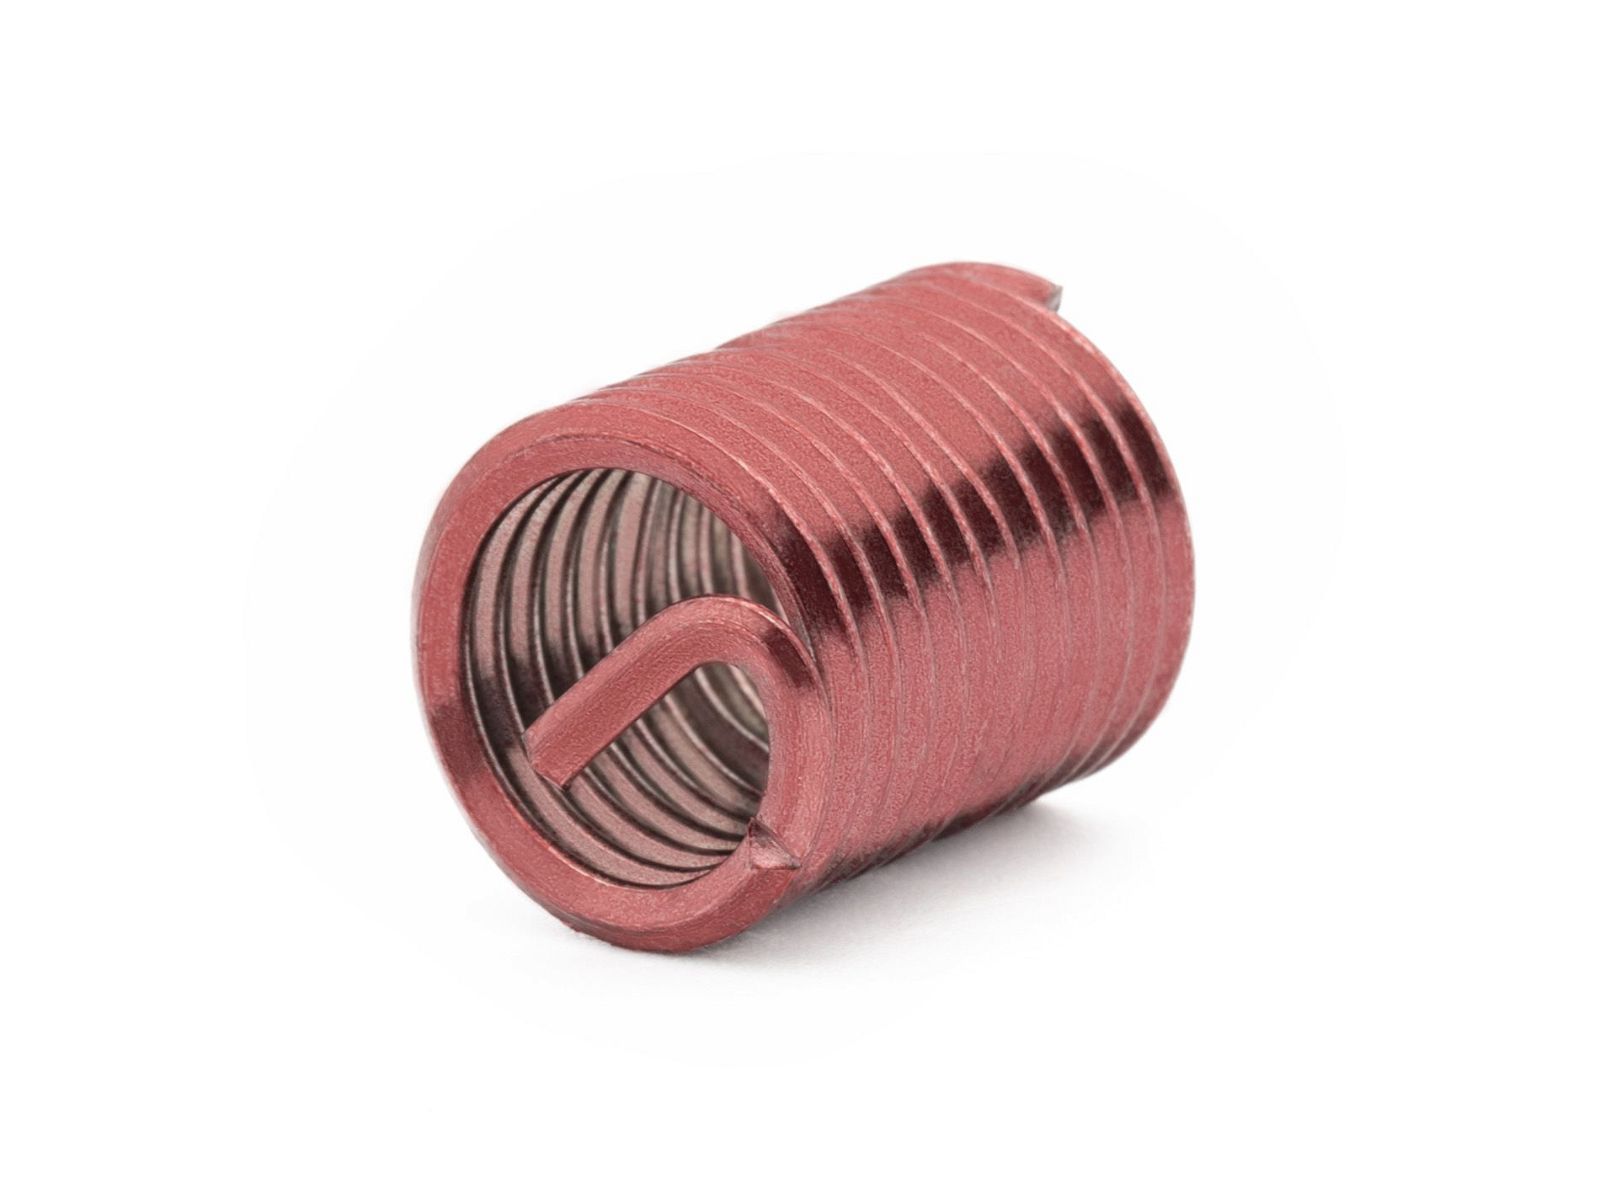 BaerCoil Wire Thread Inserts BA 0 - 2.0 D (12 mm) - screw grip (screw locking) - 100 pcs.